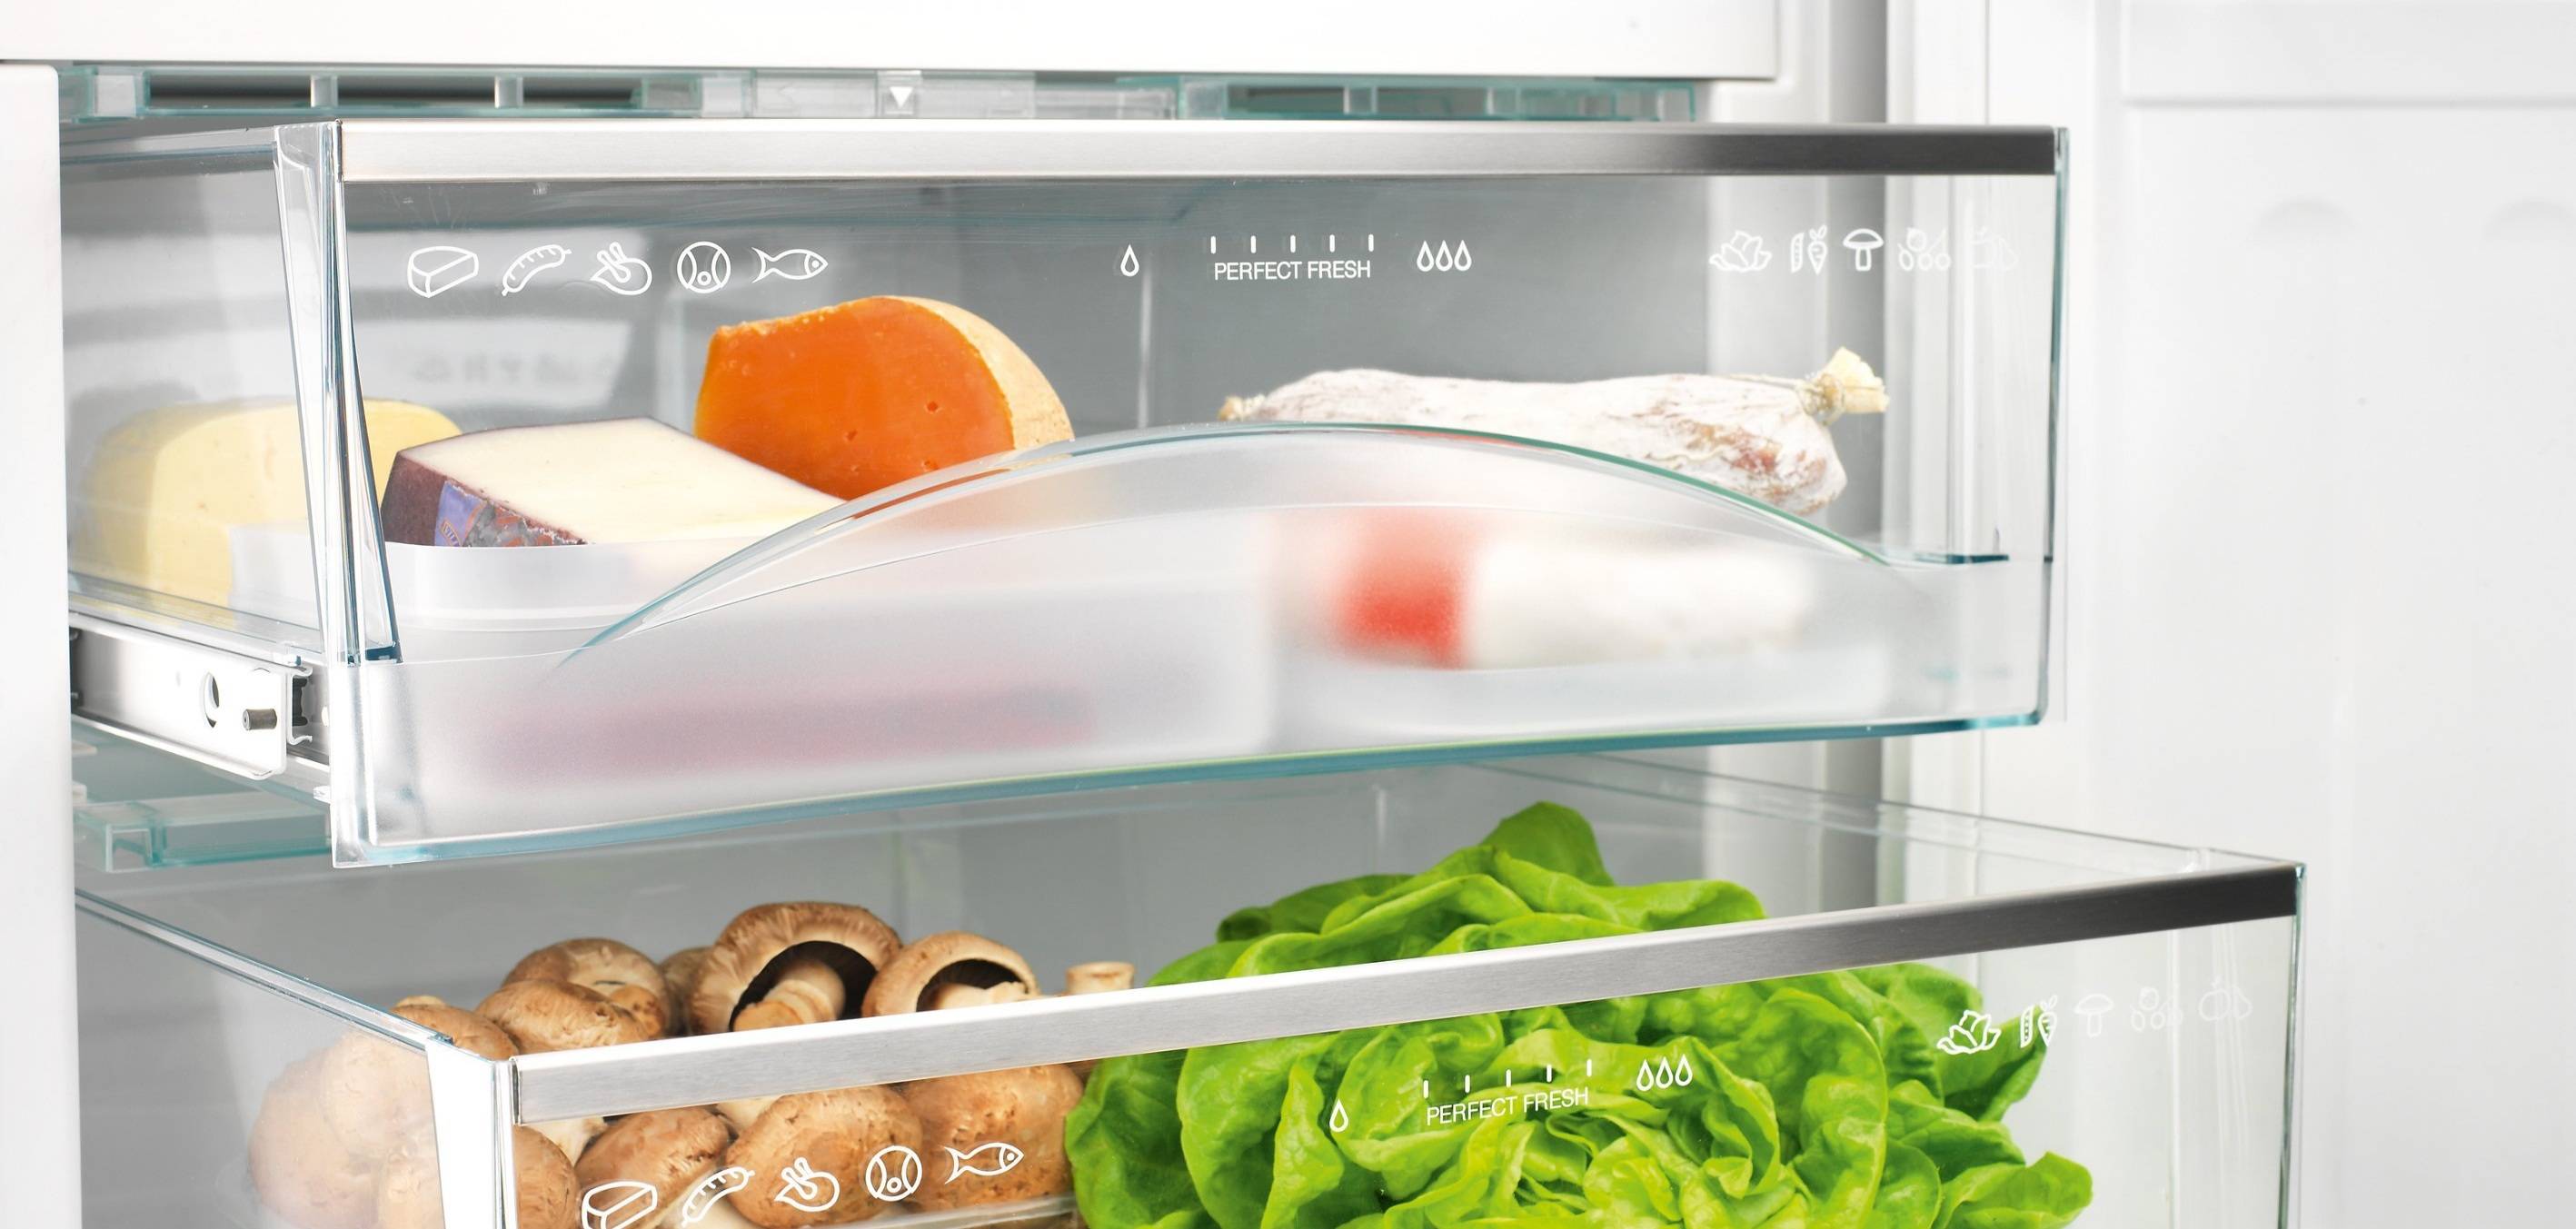 Для чего на самом деле нужна зона свежести в холодильнике и где она находится